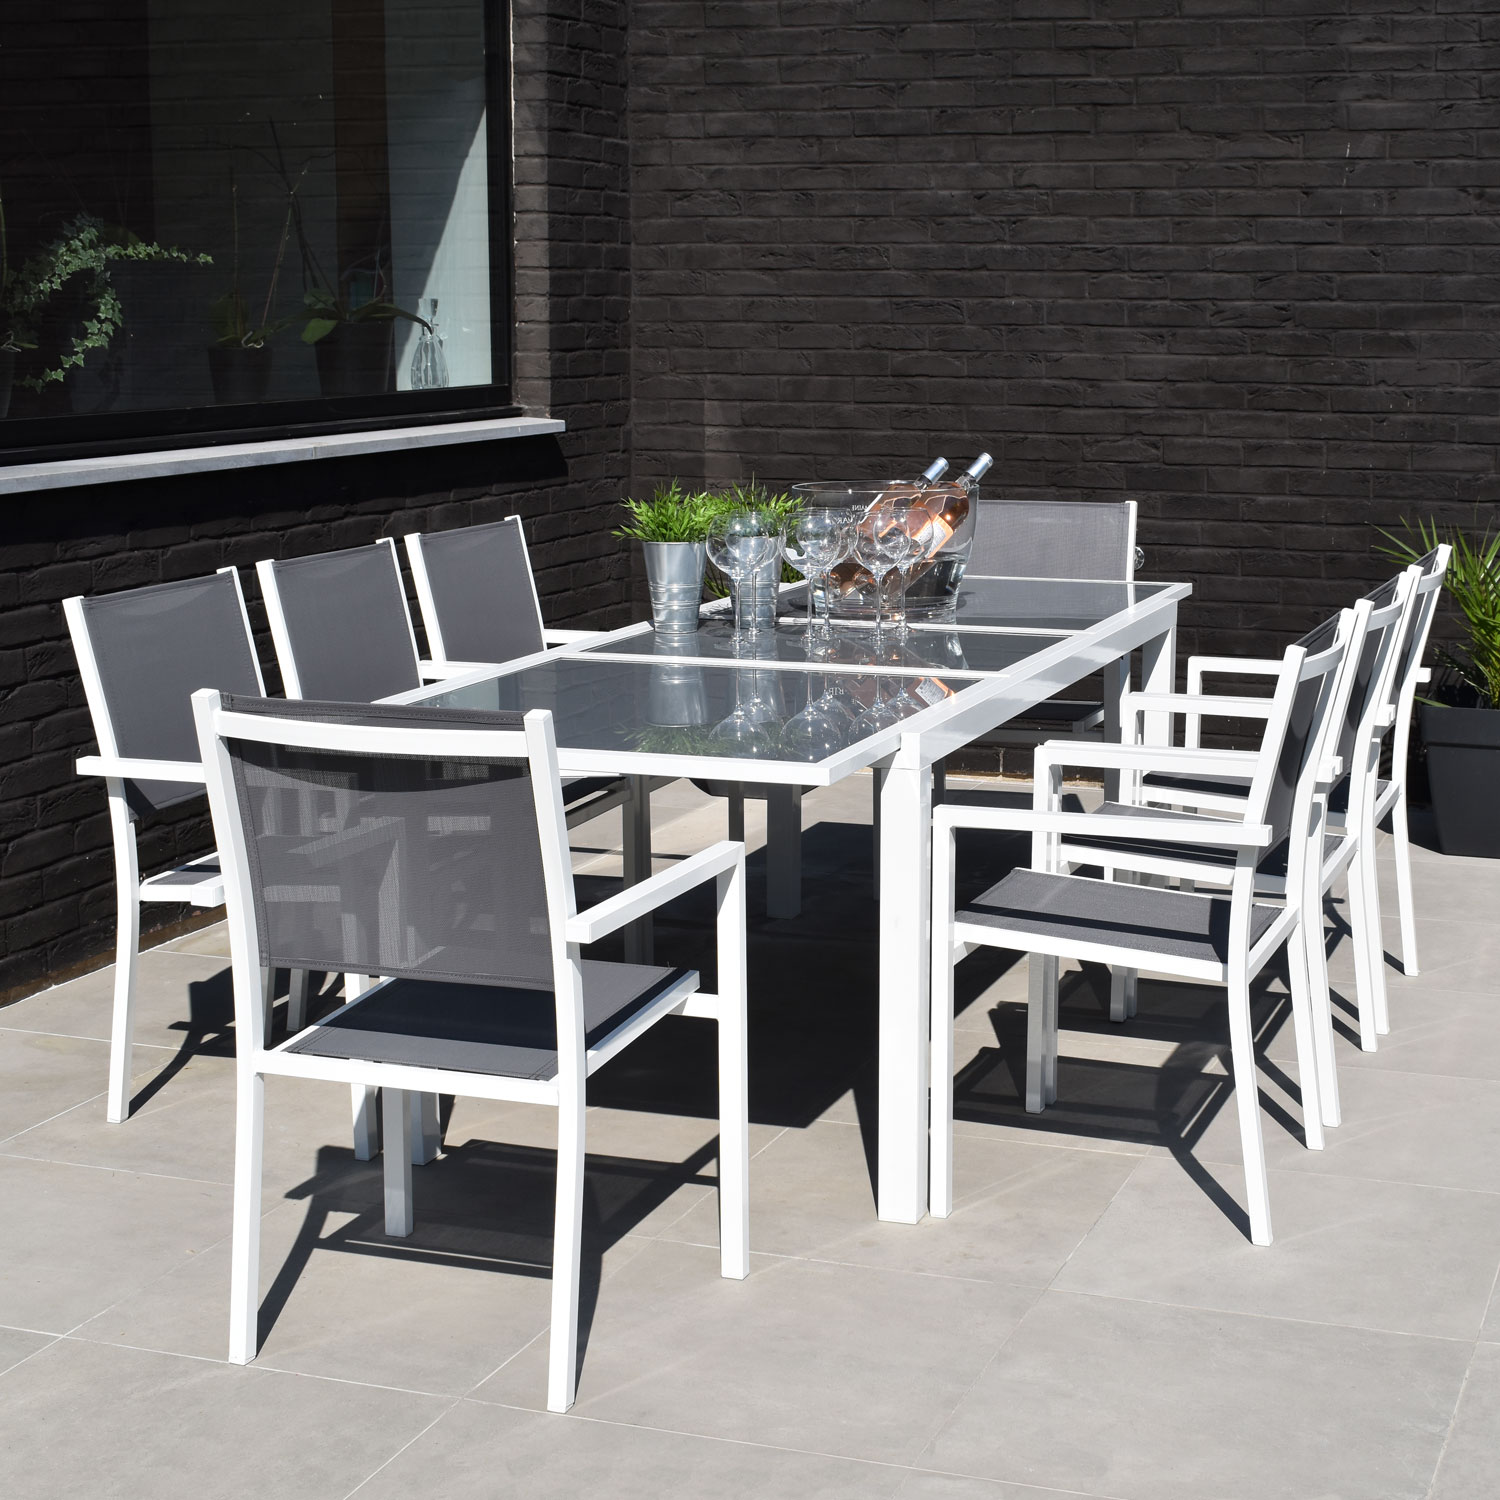 Set di mobili da giardino allungabili in textilene grigio FIRENZE 8 posti - alluminio bianco